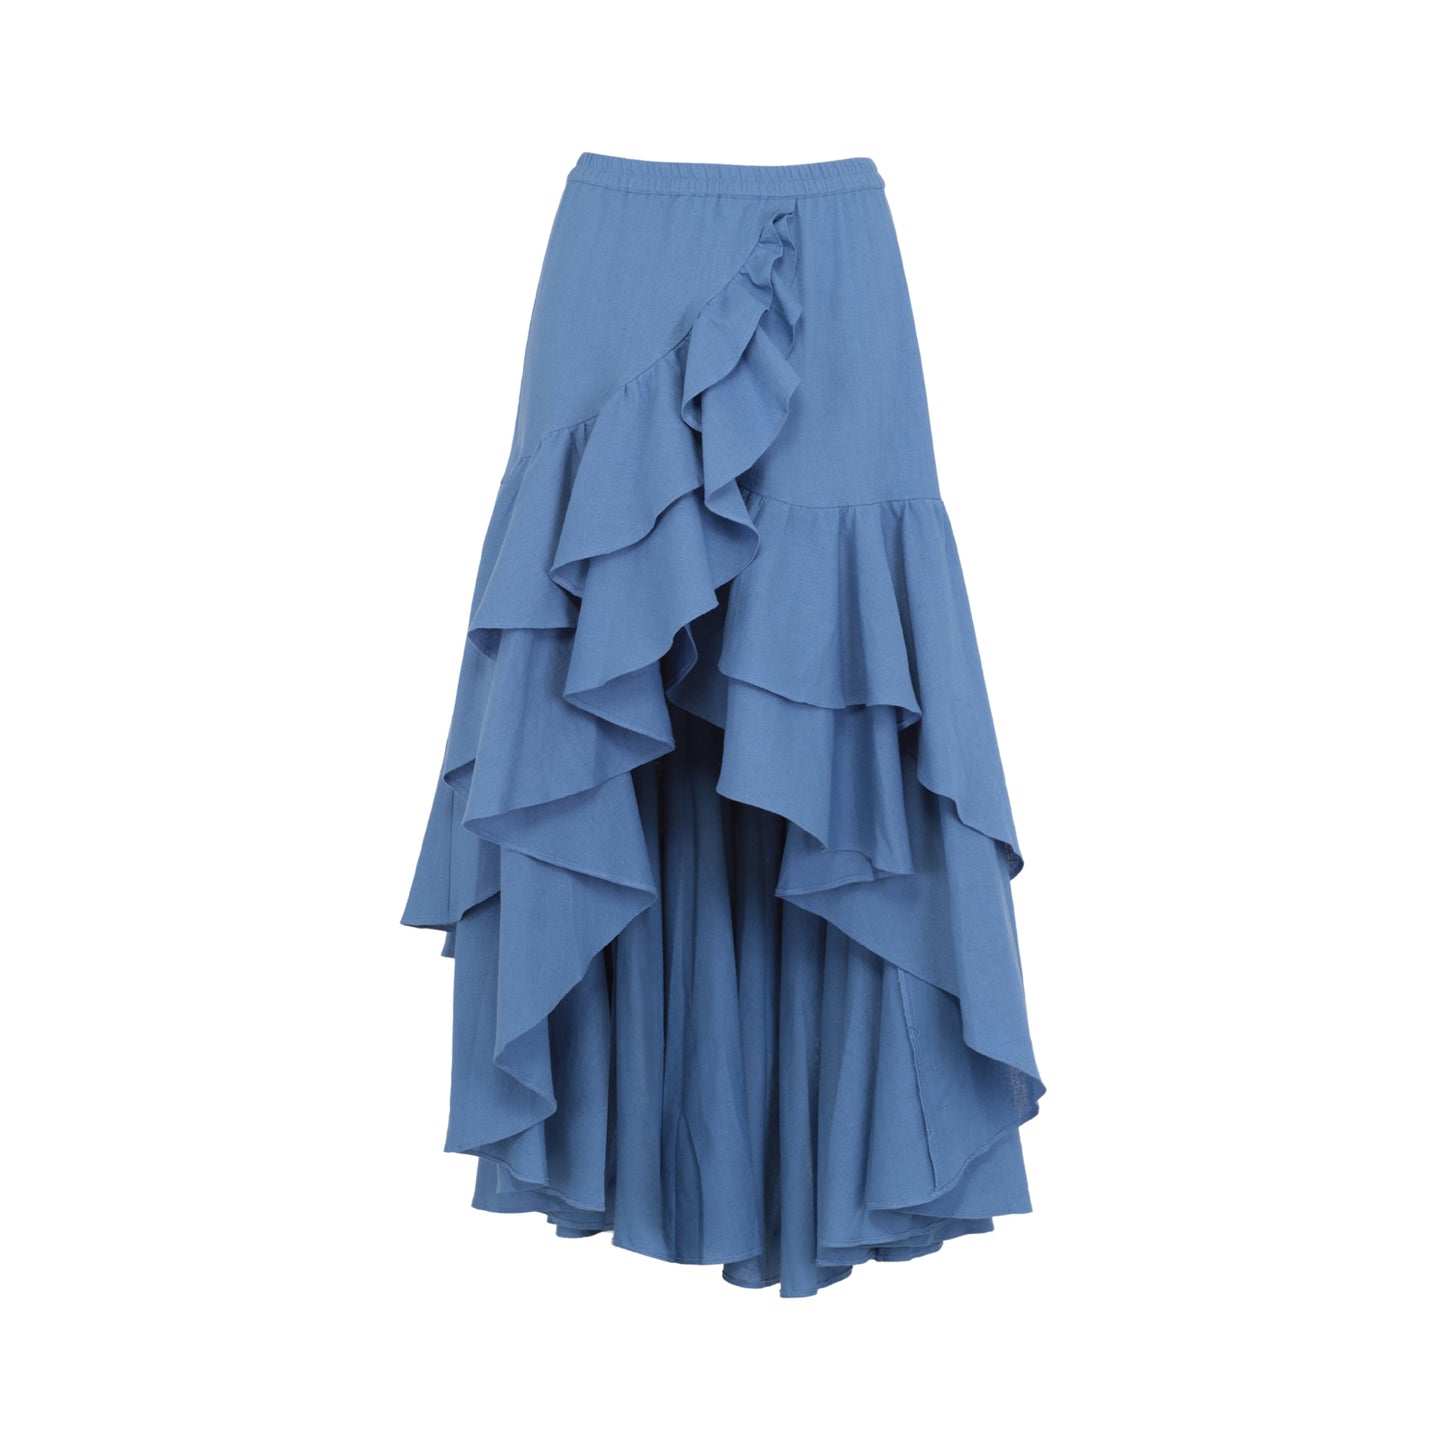 carlotta skirt in blue